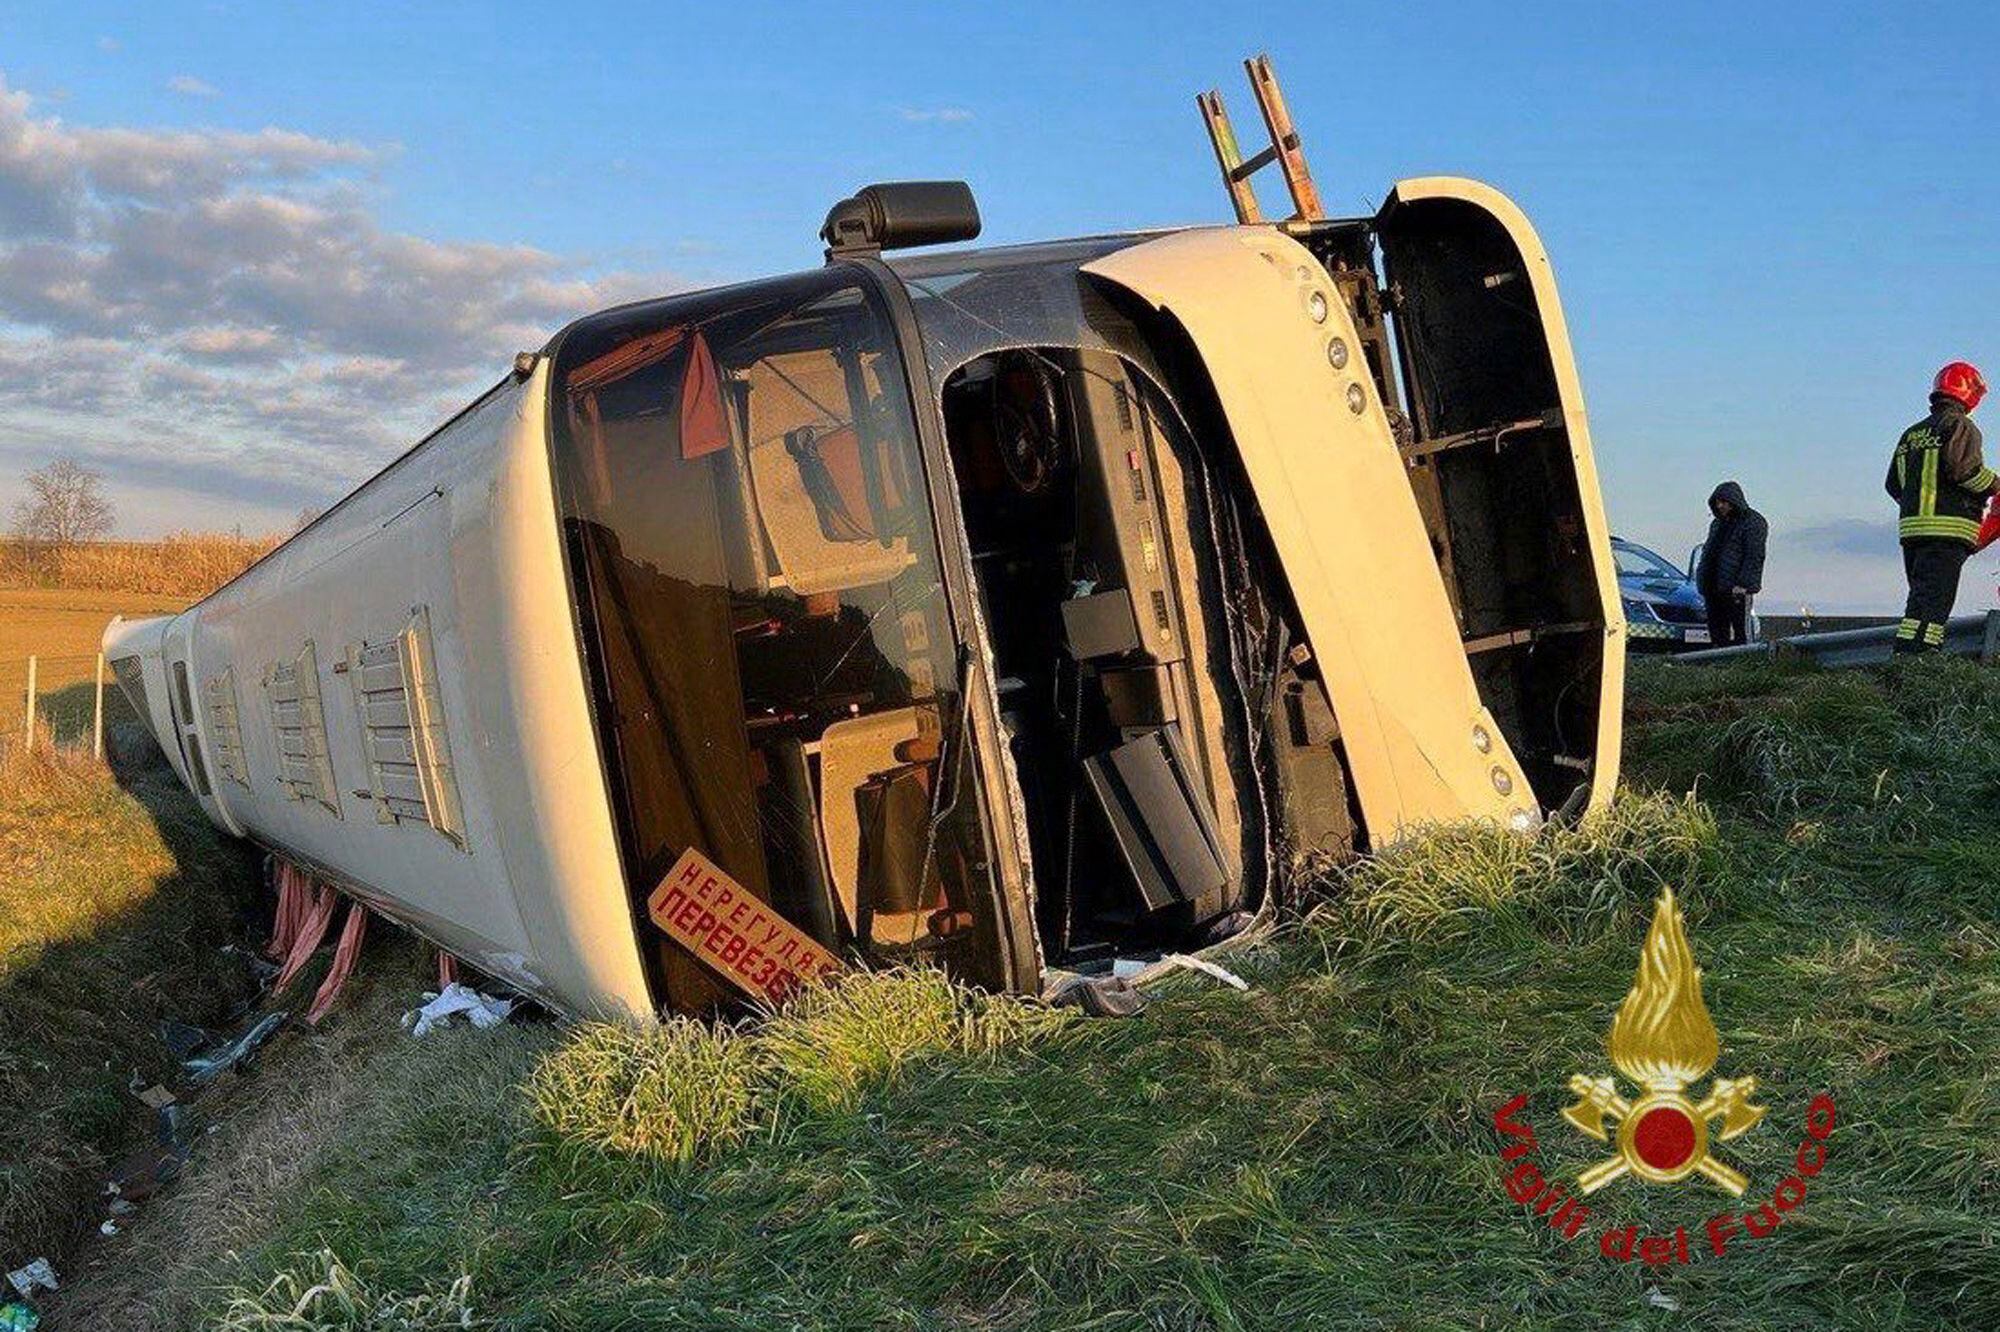 Doble tragedia: Una joven murió al volcarse autobús que transportaba a refugiados ucranianos